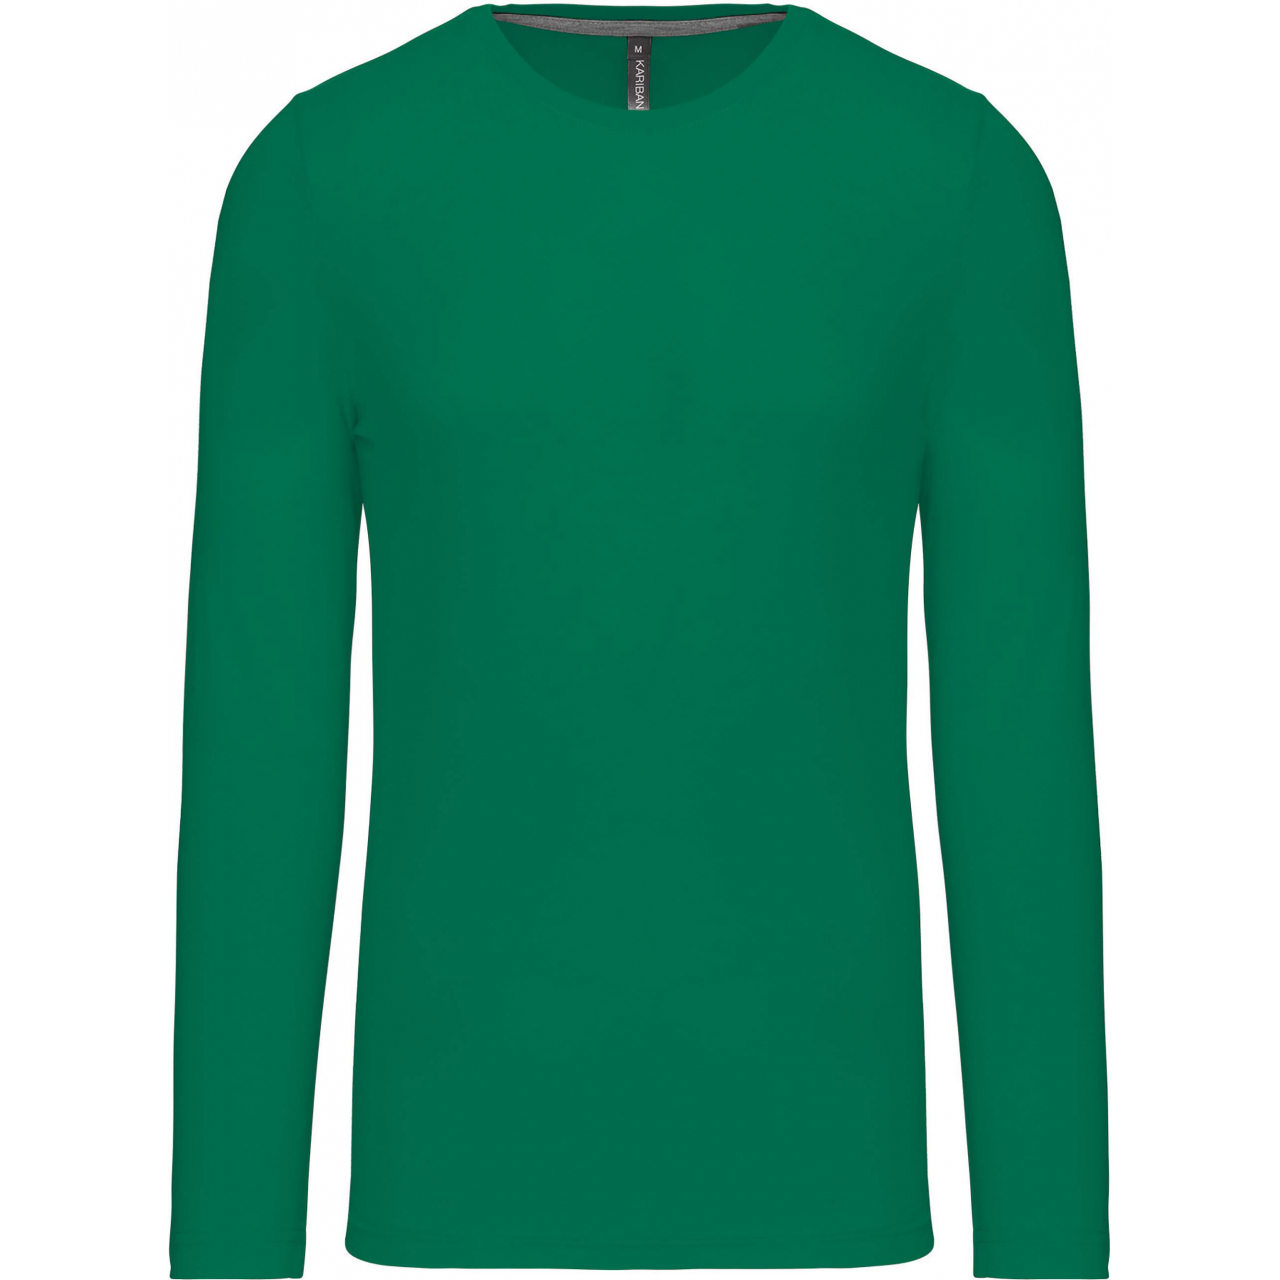 Pánské tričko Kariban dlouhý rukáv - zelené, 4XL